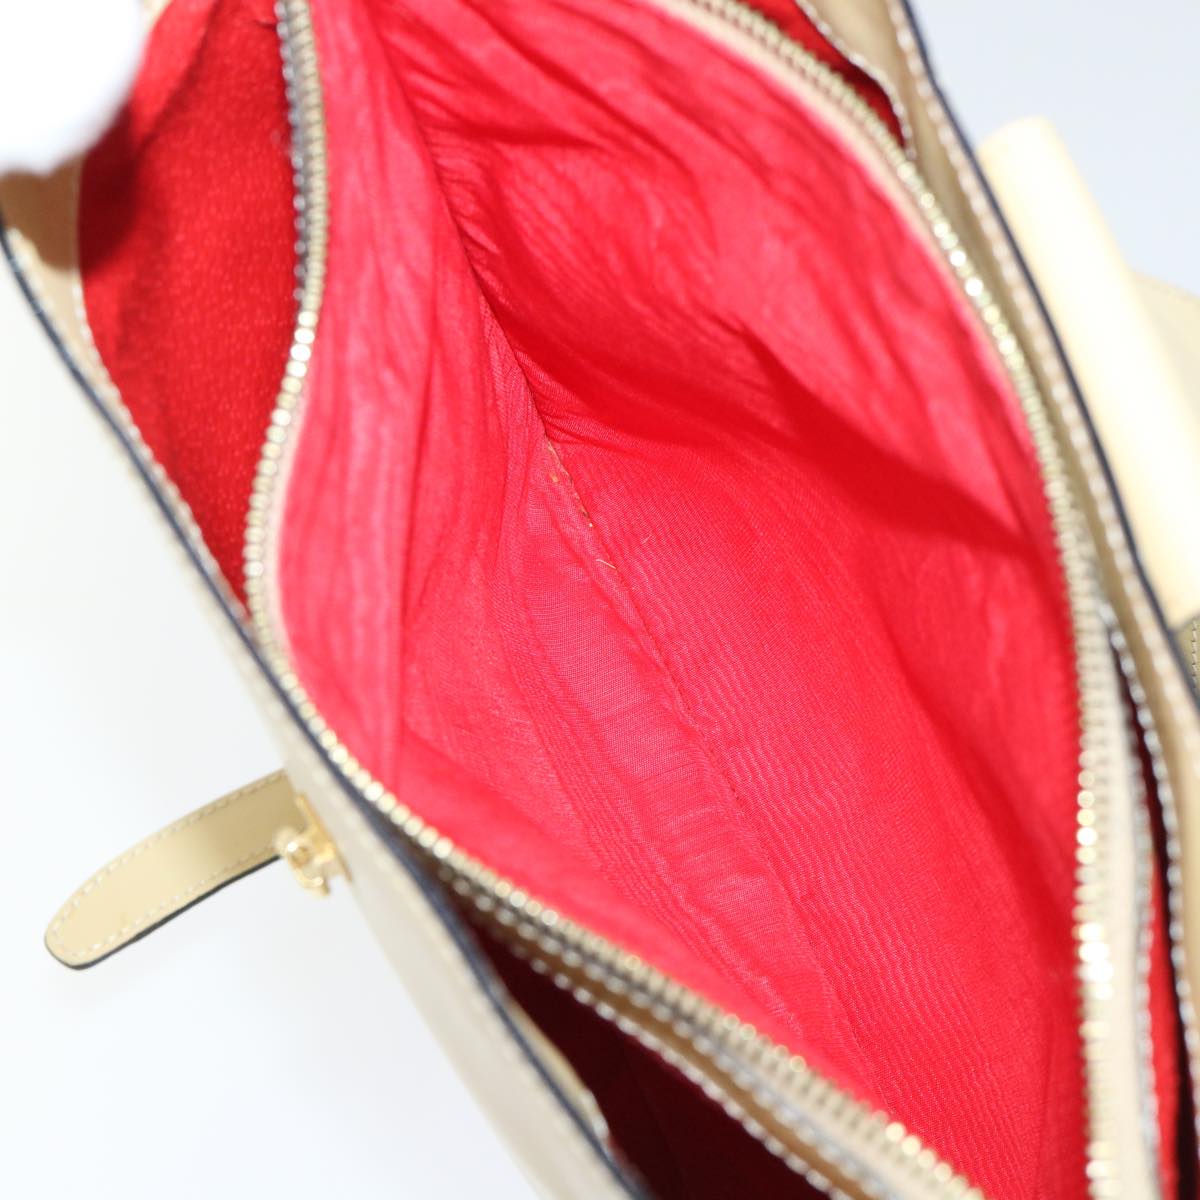 CELINE Shoulder Bag Leather Beige Auth ar10051B